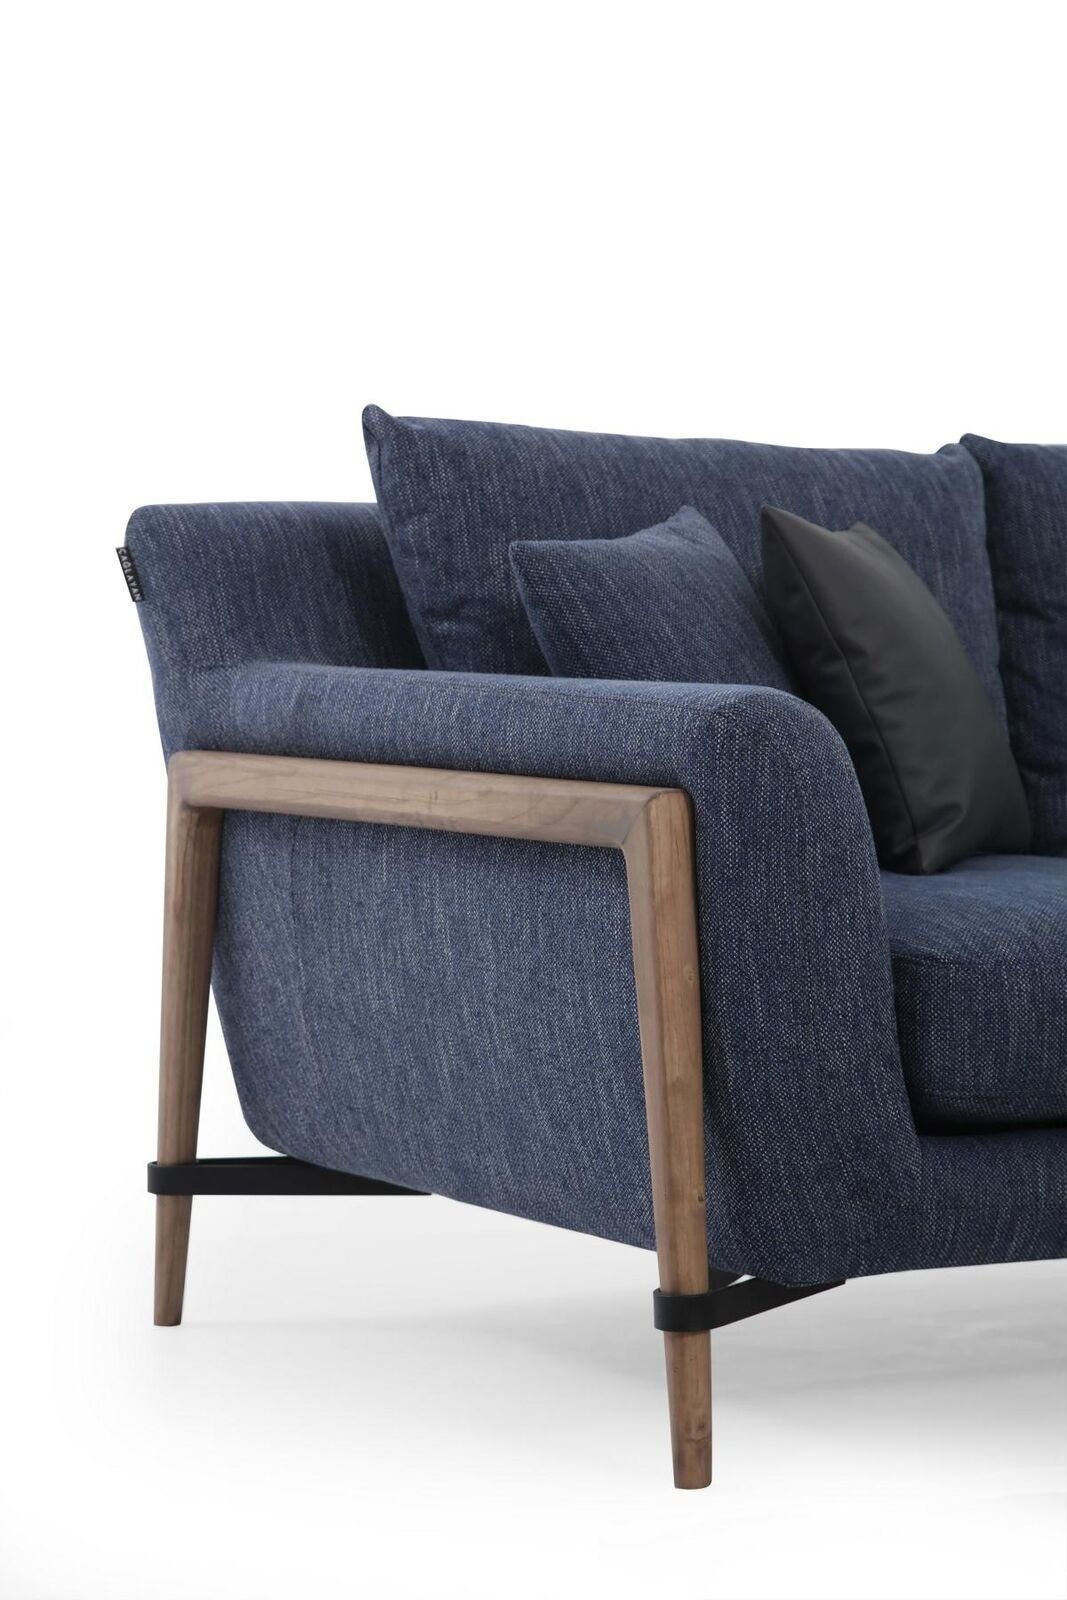 JVmoebel 3-Sitzer Dreisitzer Sitzer Sofas in 3 Wohnzimmer Teile, Design Europa Sofa Blau, Made Modern Stoff 1